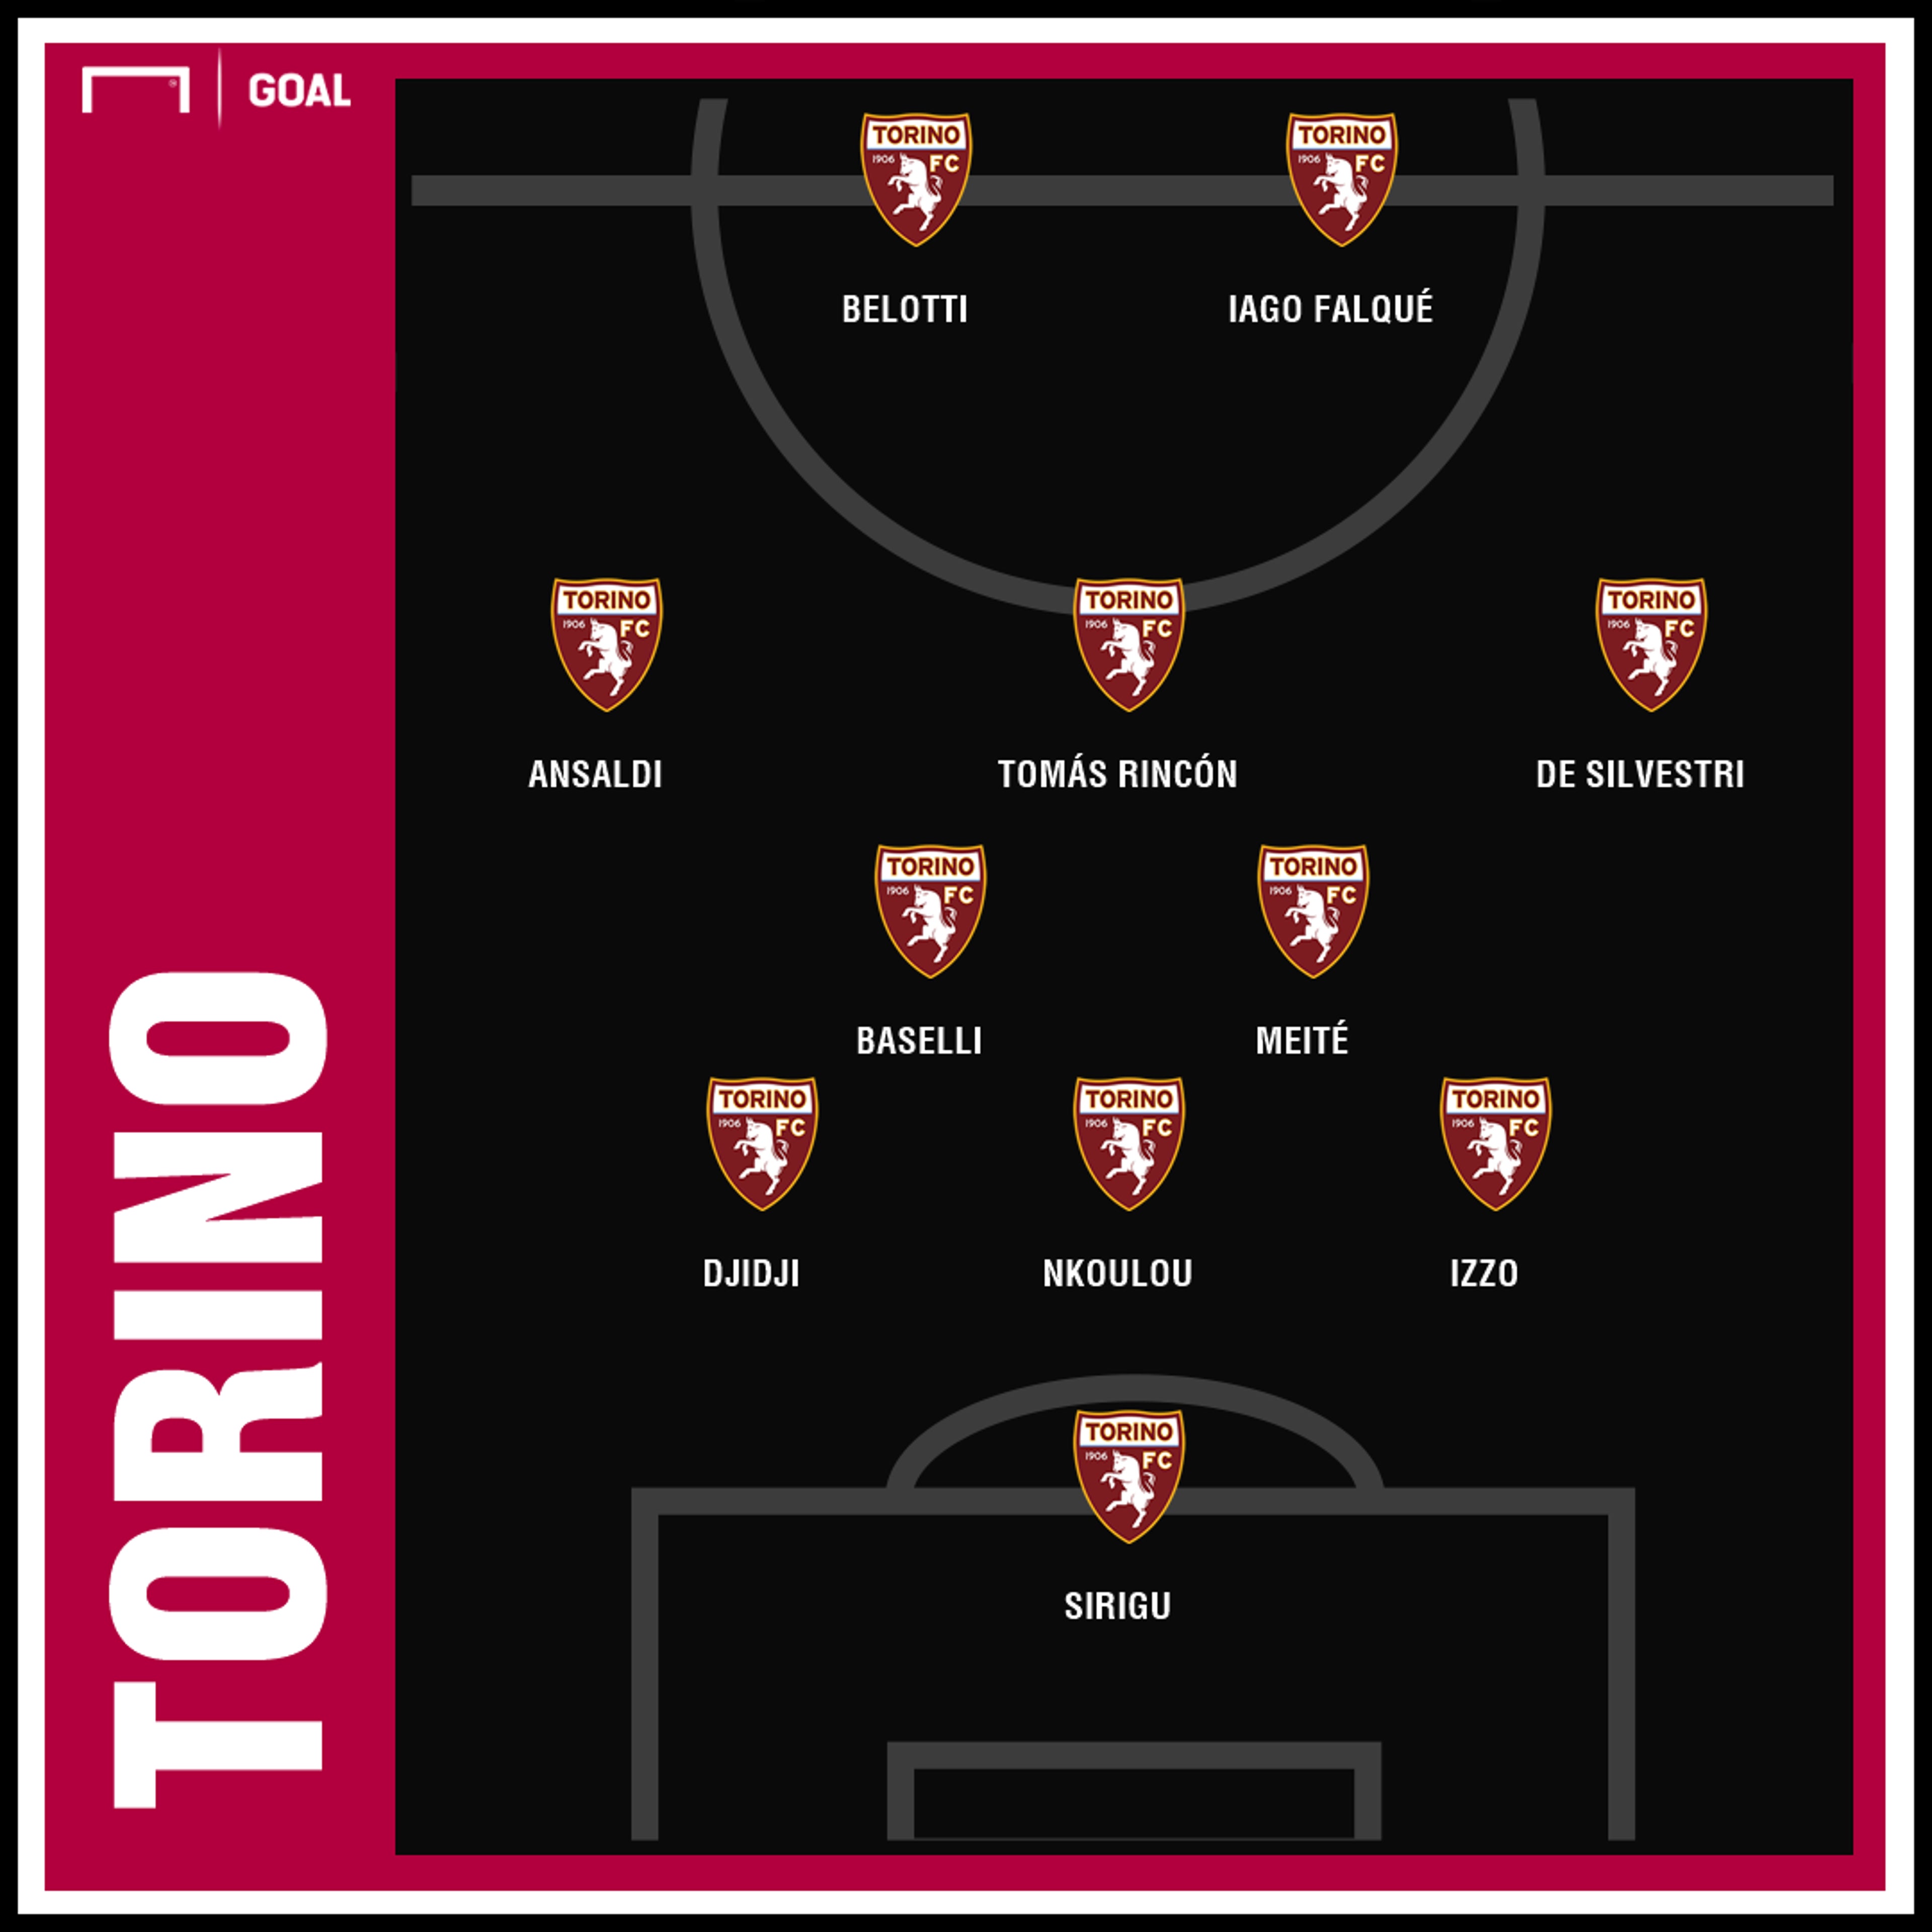 Torino x Juventus AO VIVO e DE GRAÇA! Assista aqui com DAZN e Goal